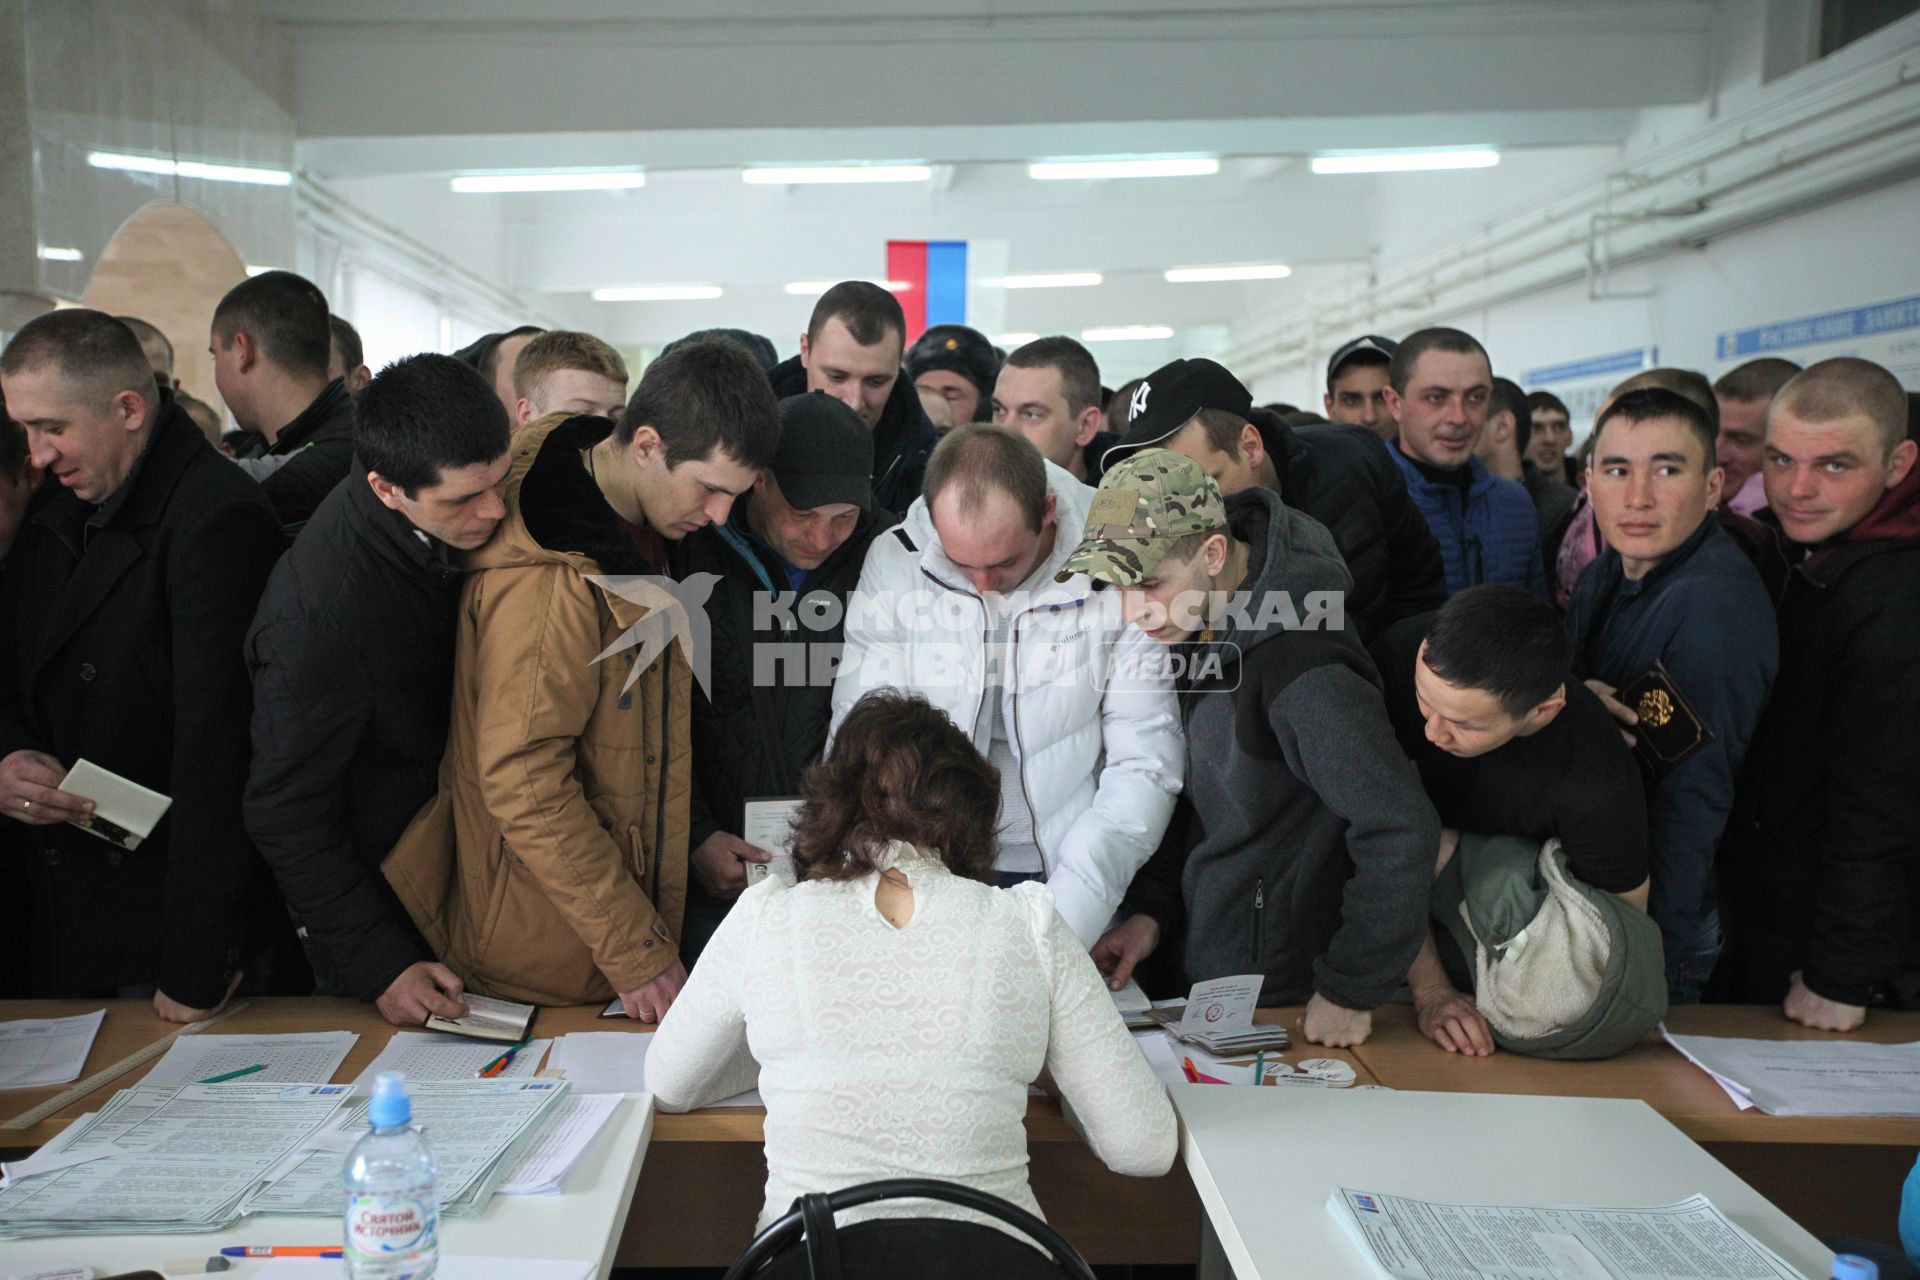 Ставрополь. Очередь на избирательном участке во время голосования на выборах президента РФ.